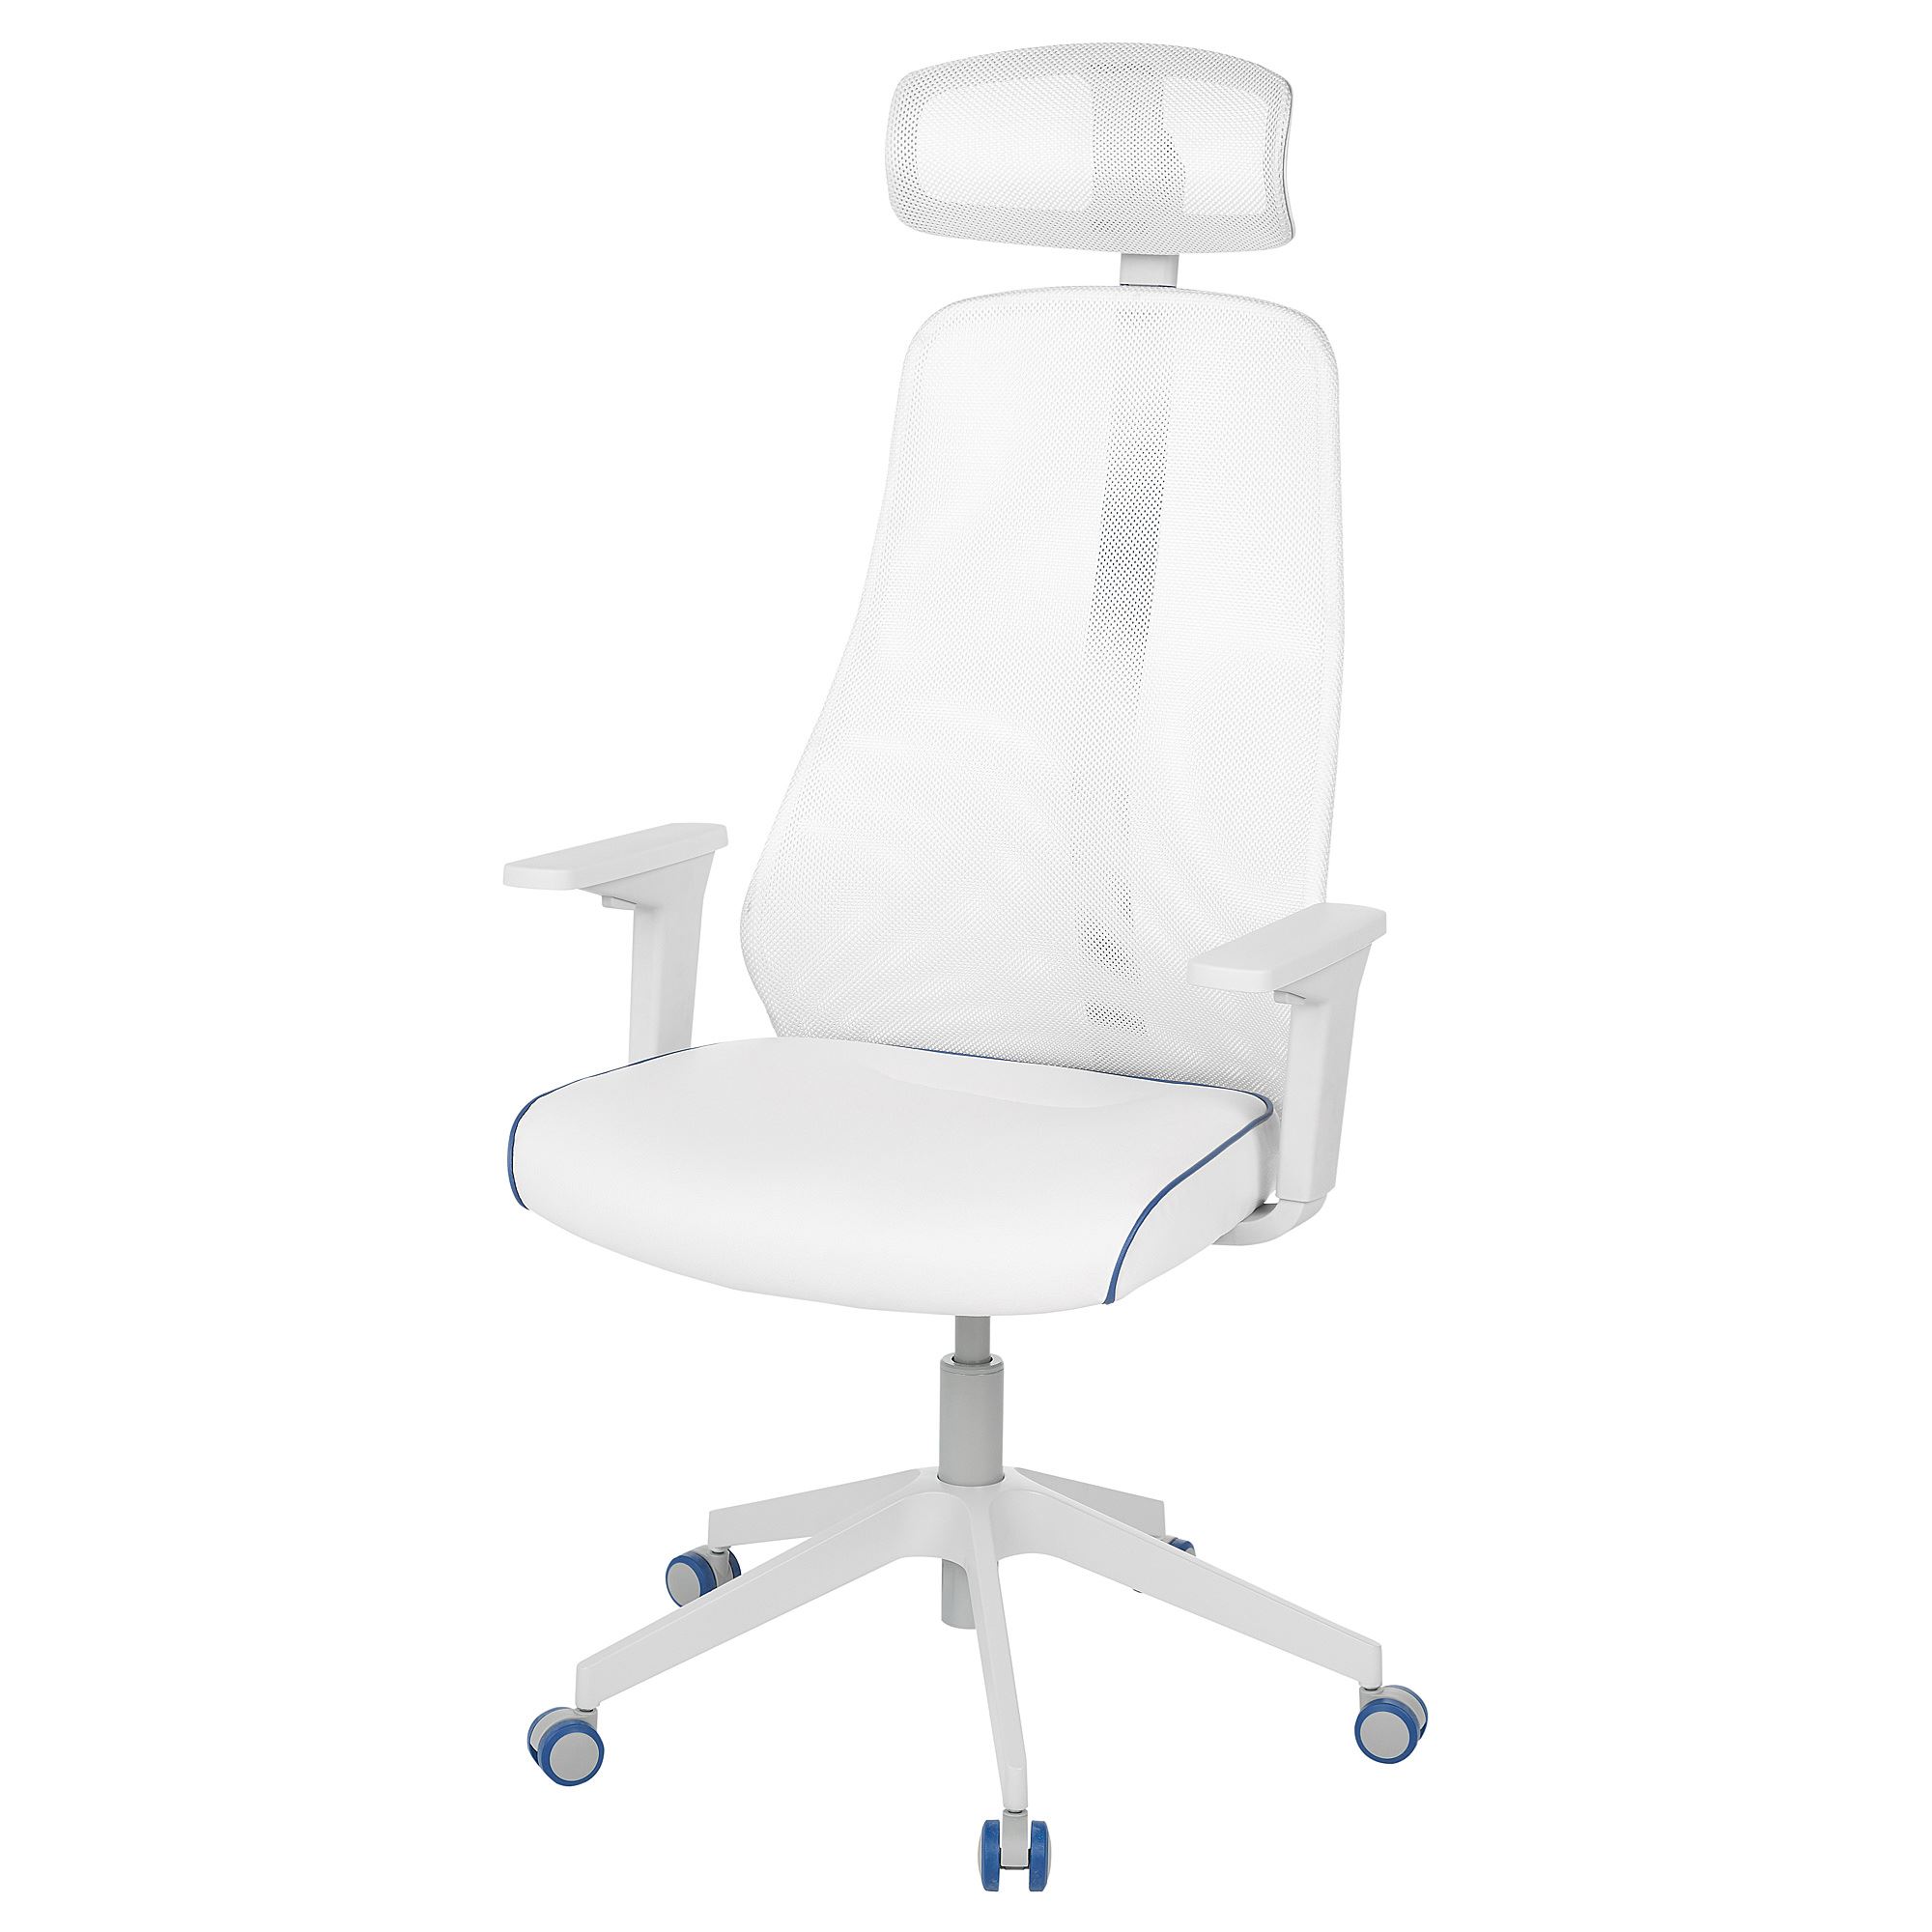 MATCHSPEL bomstad beyaz oyuncu sandalyesi | IKEA